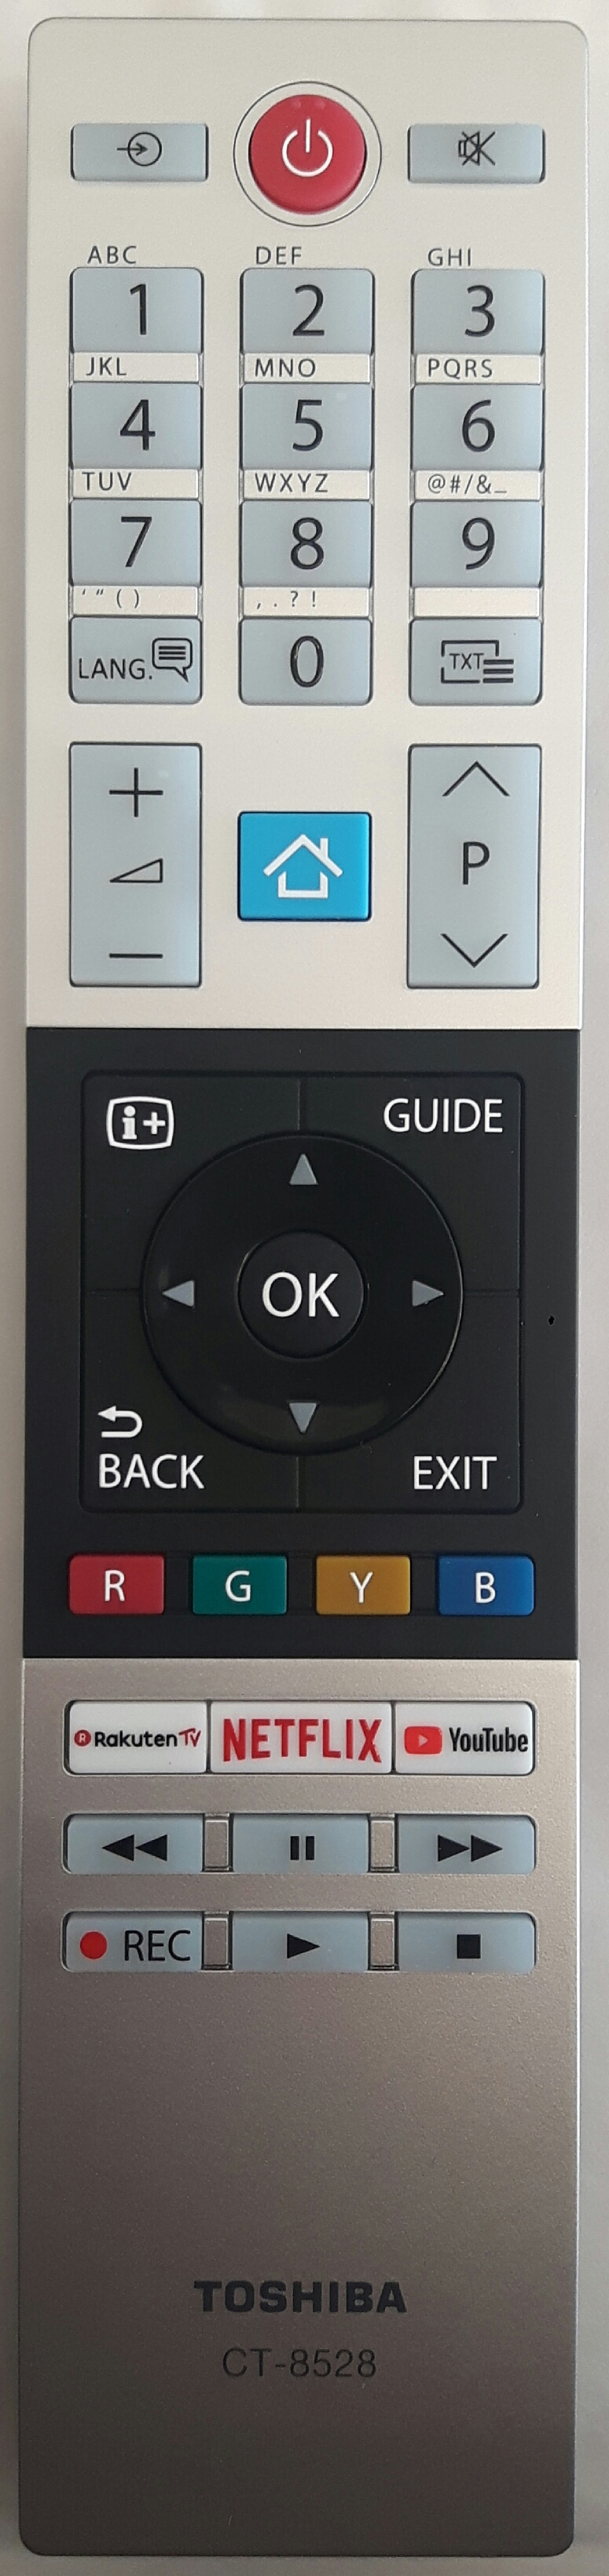 TOSHIBA 10120713 Remote Control Original